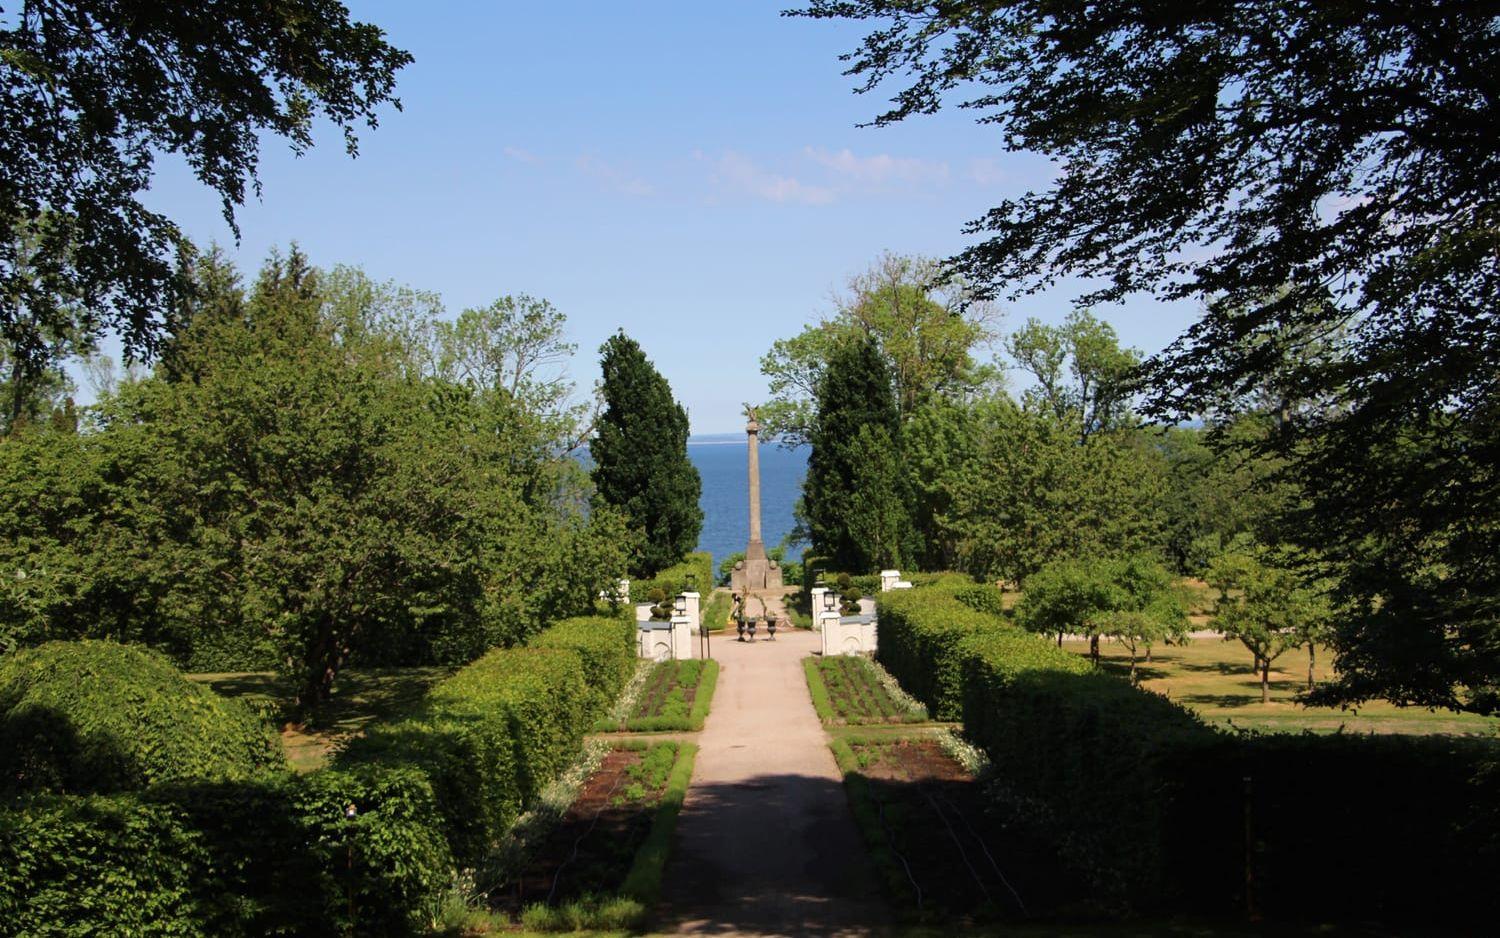 Långa siktlinjer är typiska för de klassiska stilträdgårdarna.